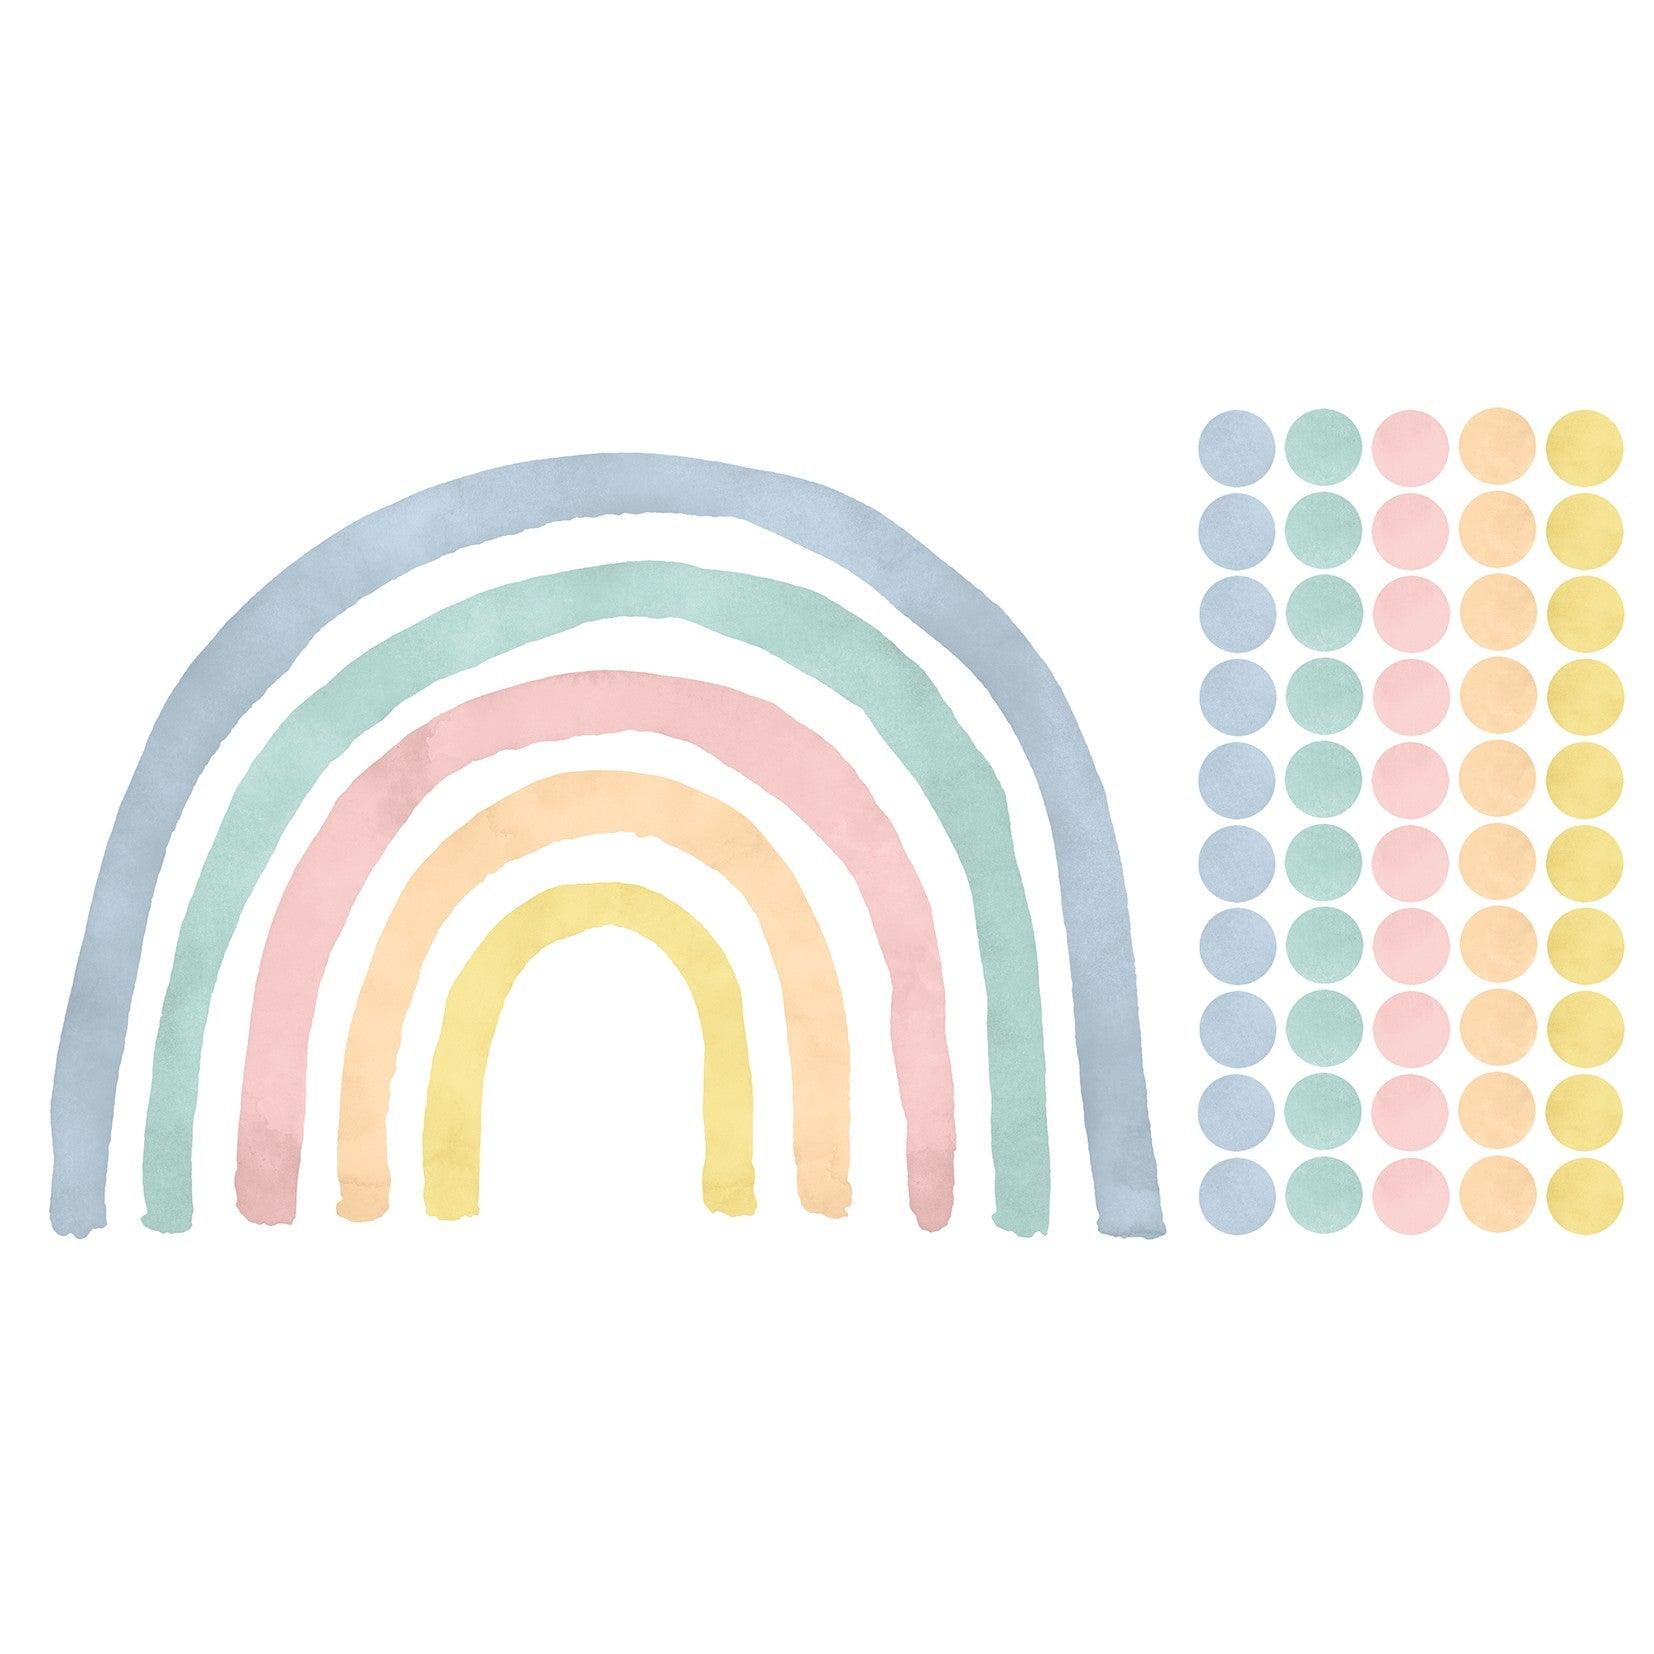 Wandtattoo Kinderzimmer - Regenbogen mit Punkte Pastell